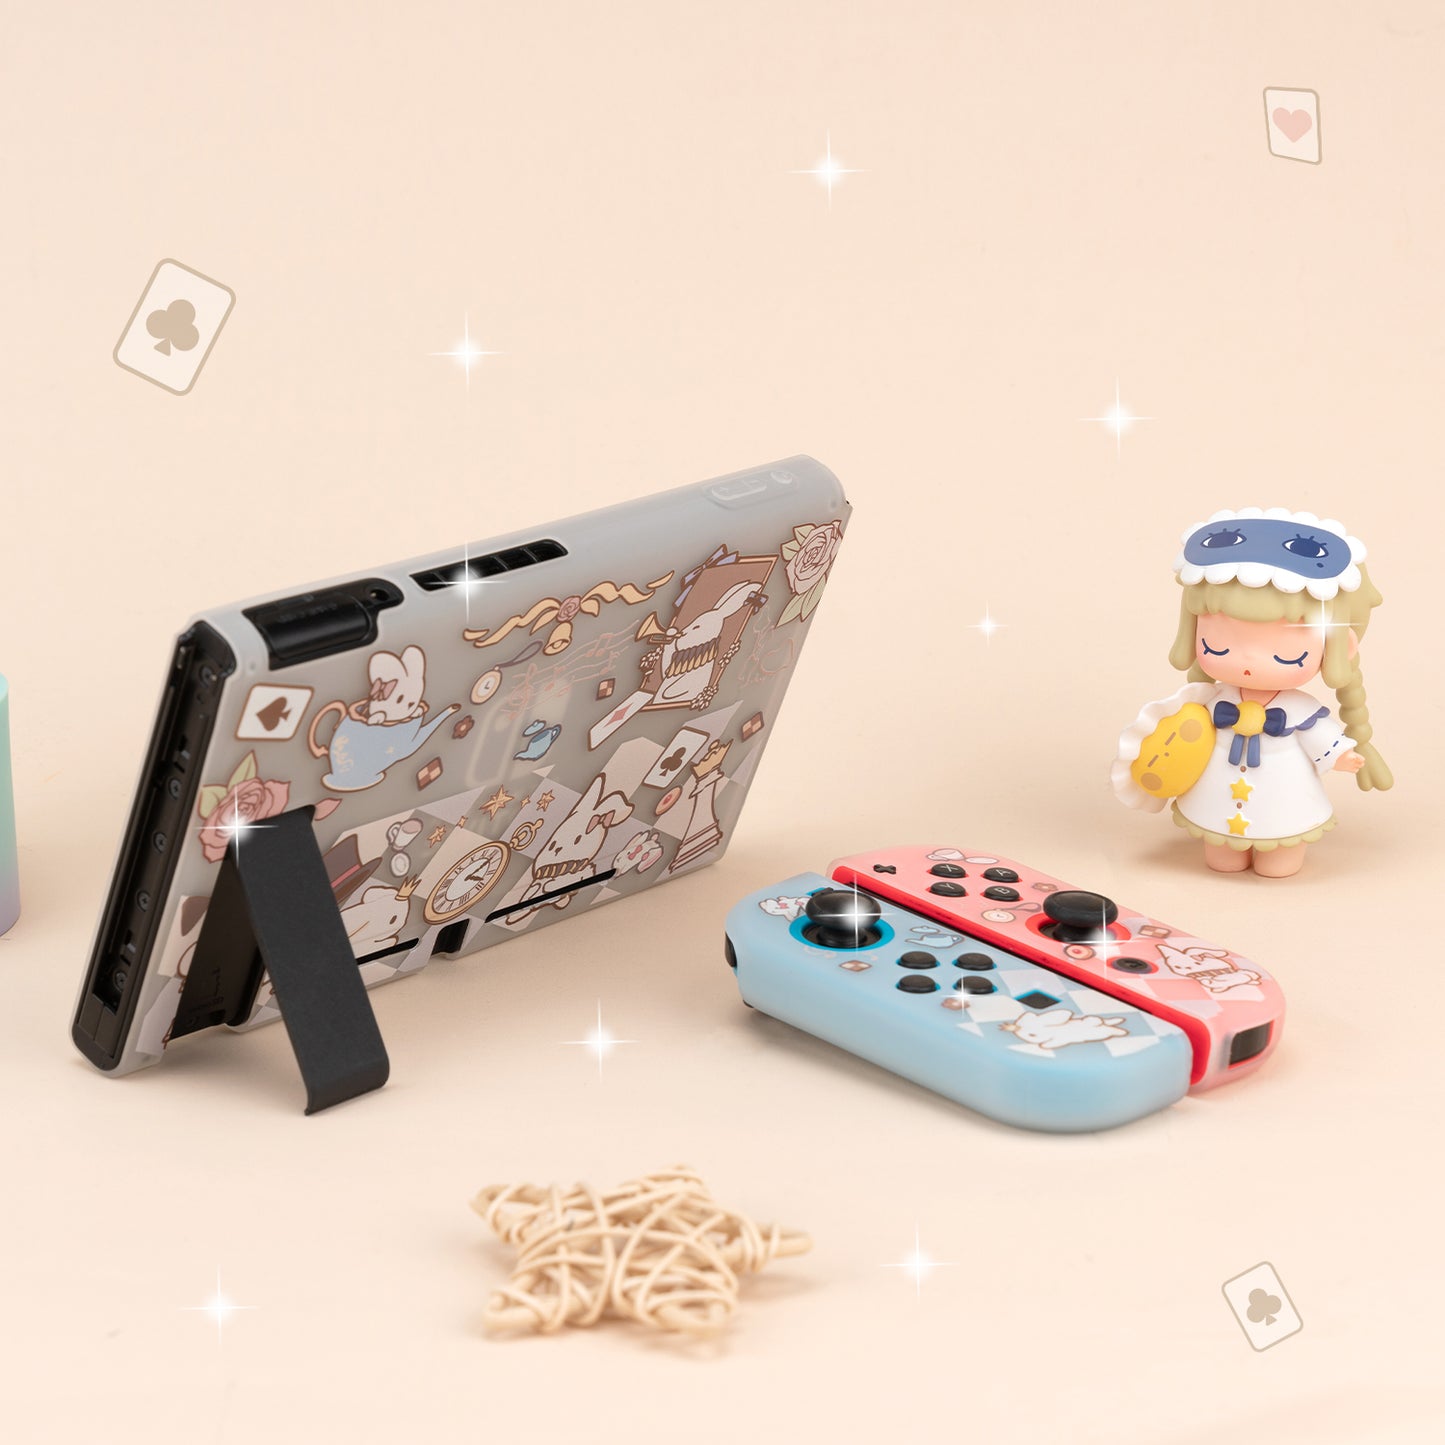 BlingKiyo Alice Bunny Nintendo Switch Oled Protective Case